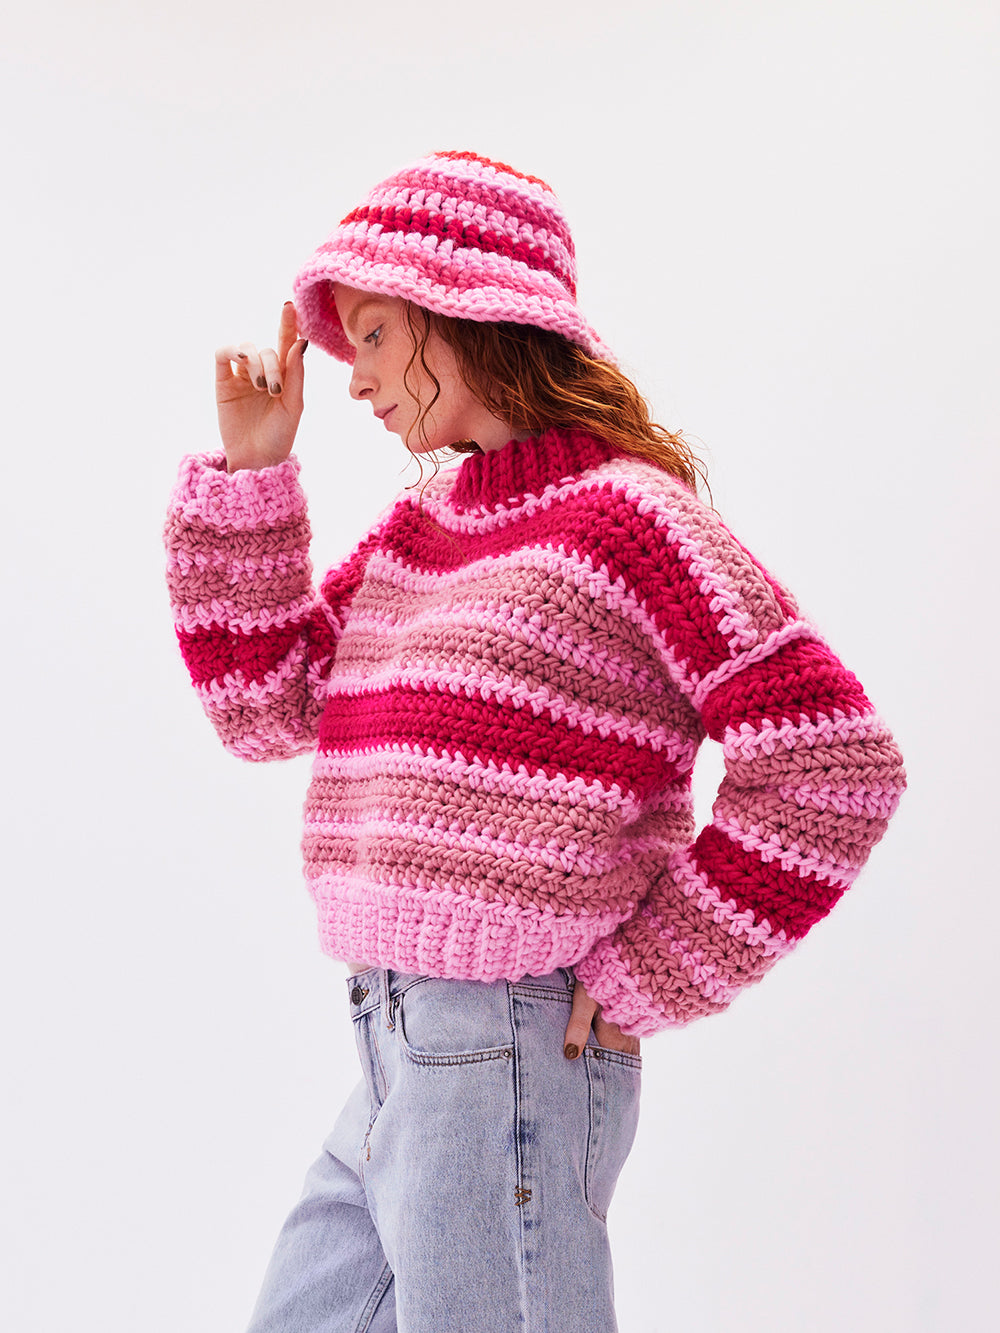 Gigi Jumper Crochet Kit